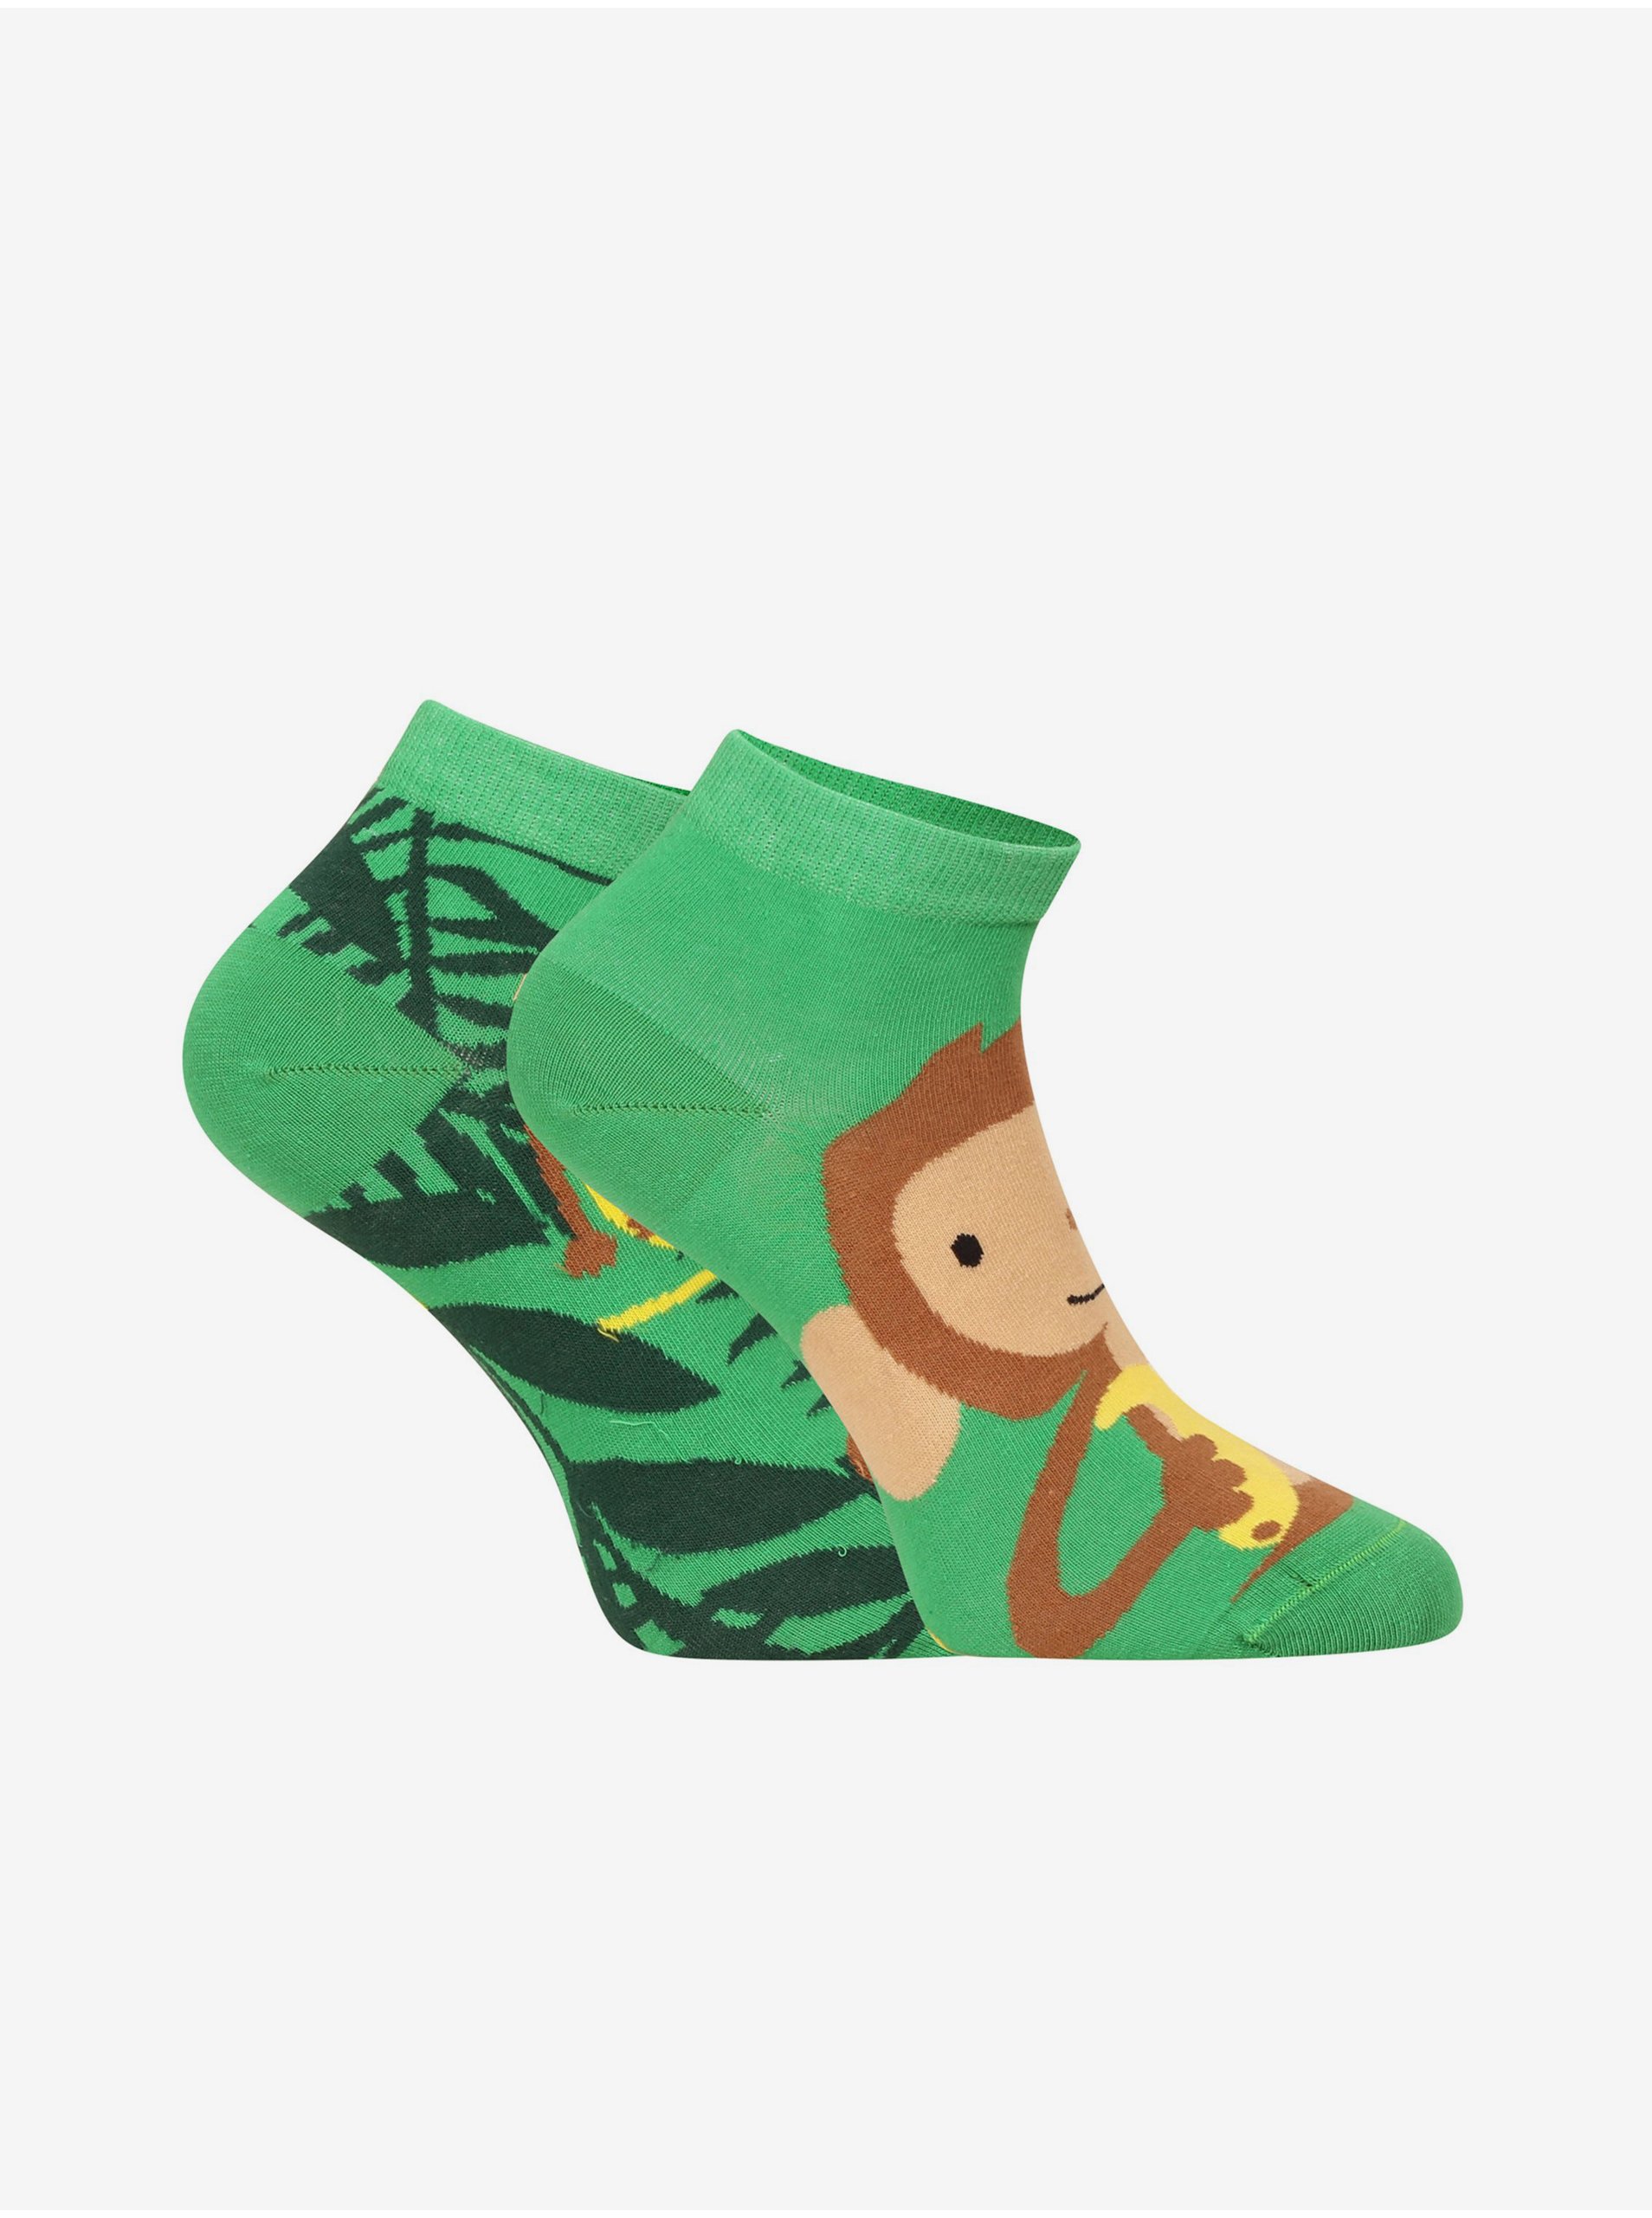 E-shop Zelené unisex veselé ponožky Dedoles Opice